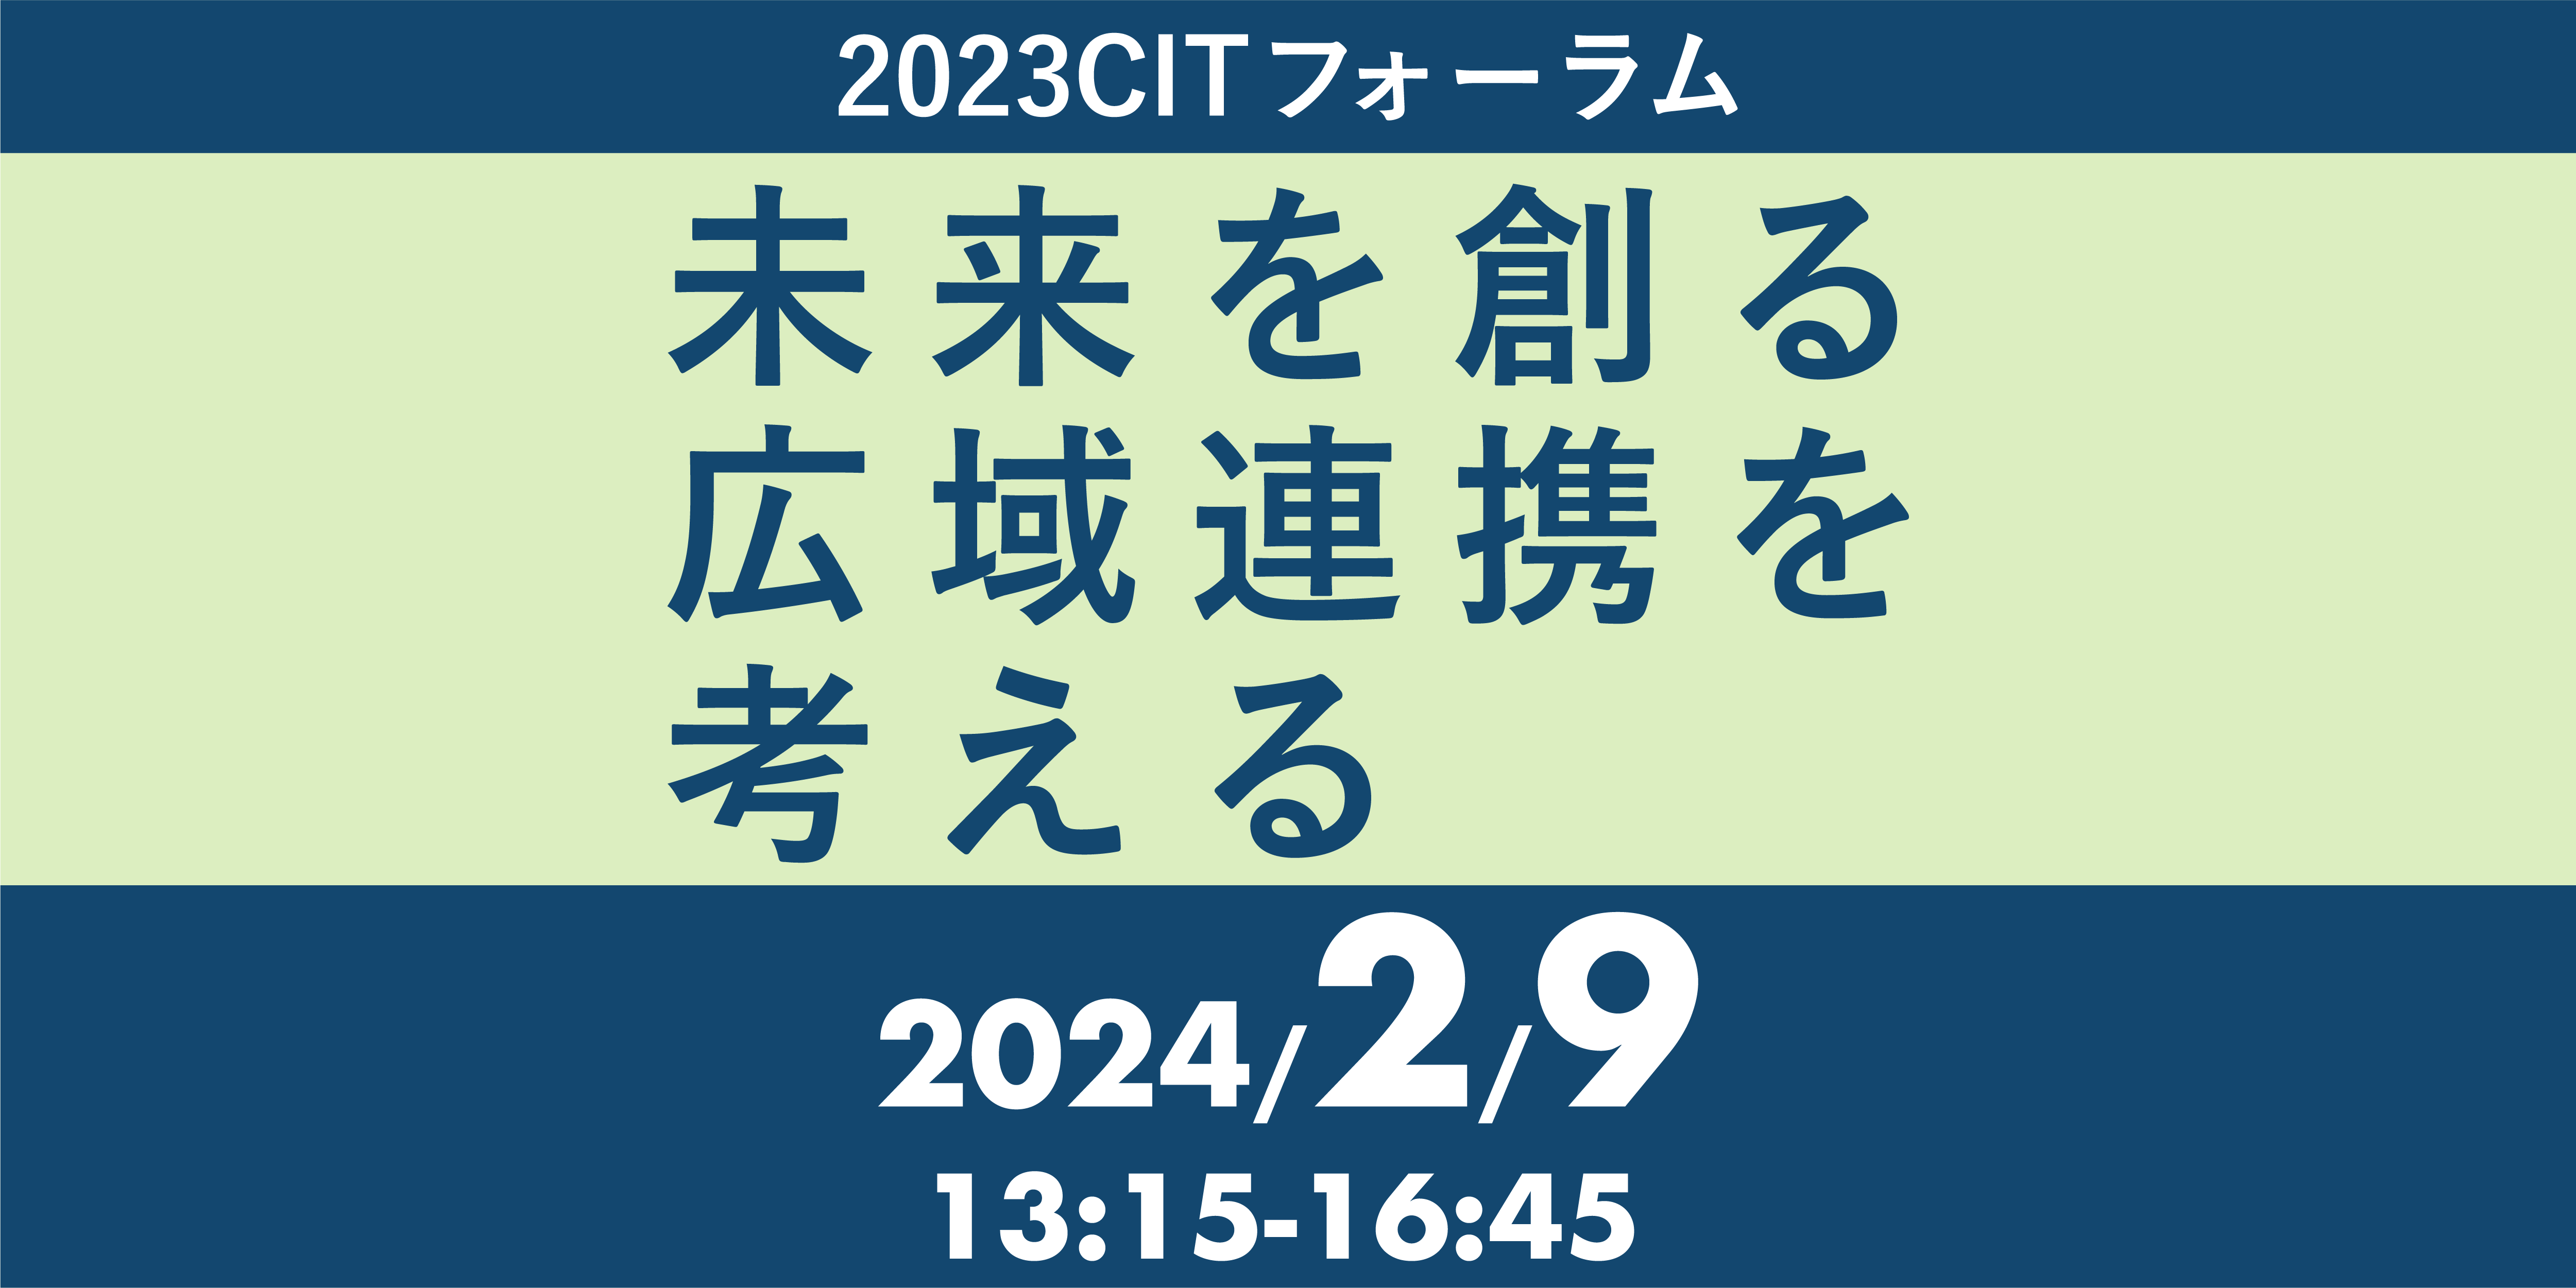 「2023CITフォーラム～未来をつくる広域連携を考える～」を開催しました